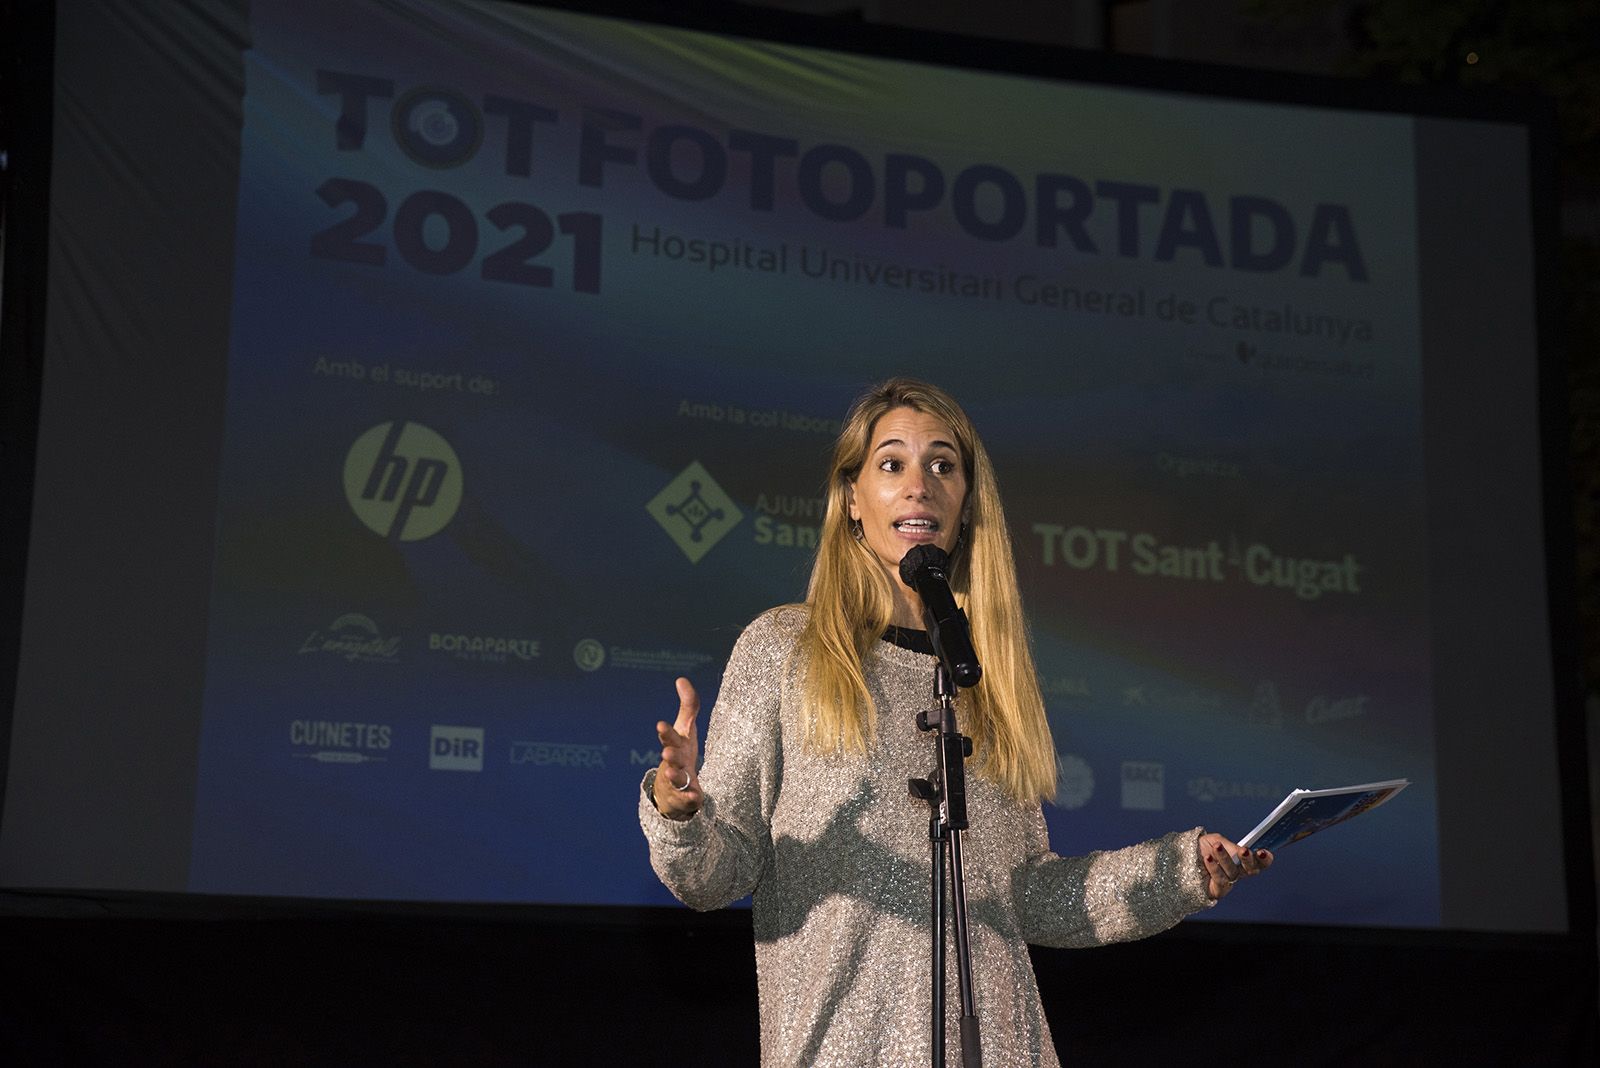 L'entrega de premis del TOT Fotoportada 2021. Foto: Bernat Millet.